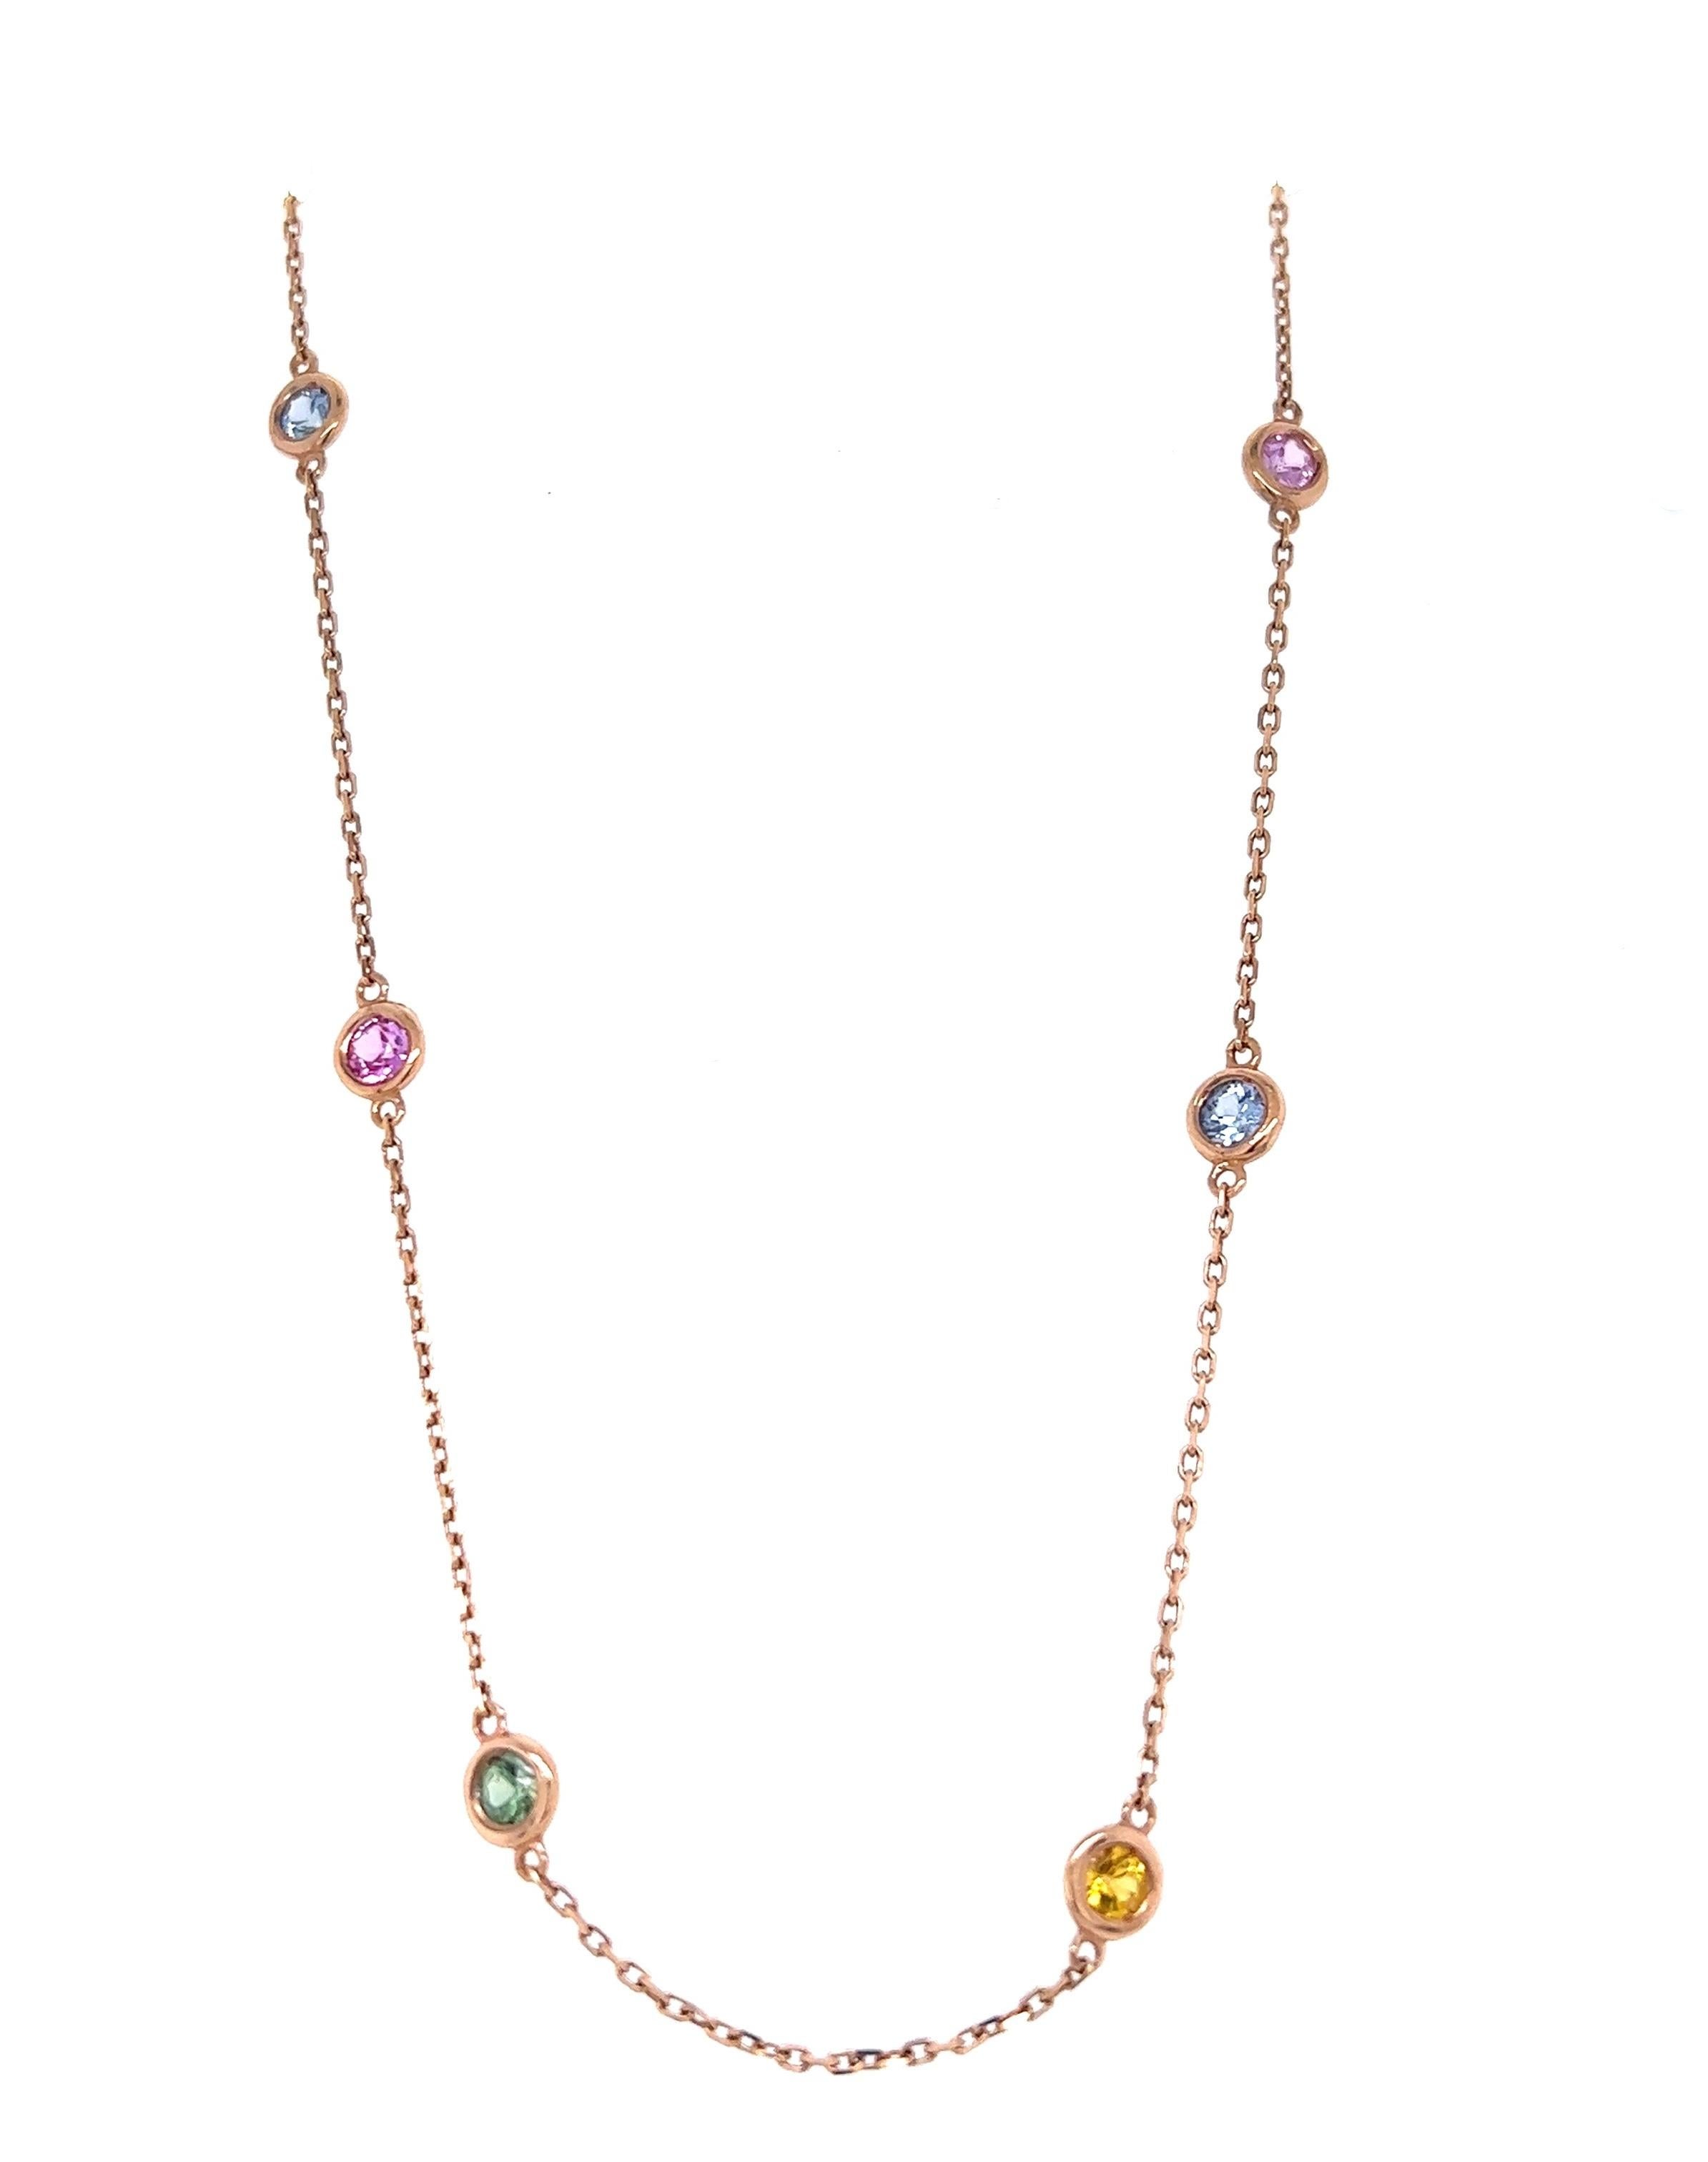 Diese Halskette besteht aus 12 mehrfarbigen natürlichen Saphiren mit einem Gewicht von 2,21 Karat. Sie sind rund geschliffene Saphire und messen ungefähr 3,5 mm in jeder Lünette. 

Kuratiert in 14 Karat Rose Gold und hat ein ungefähres Gewicht von